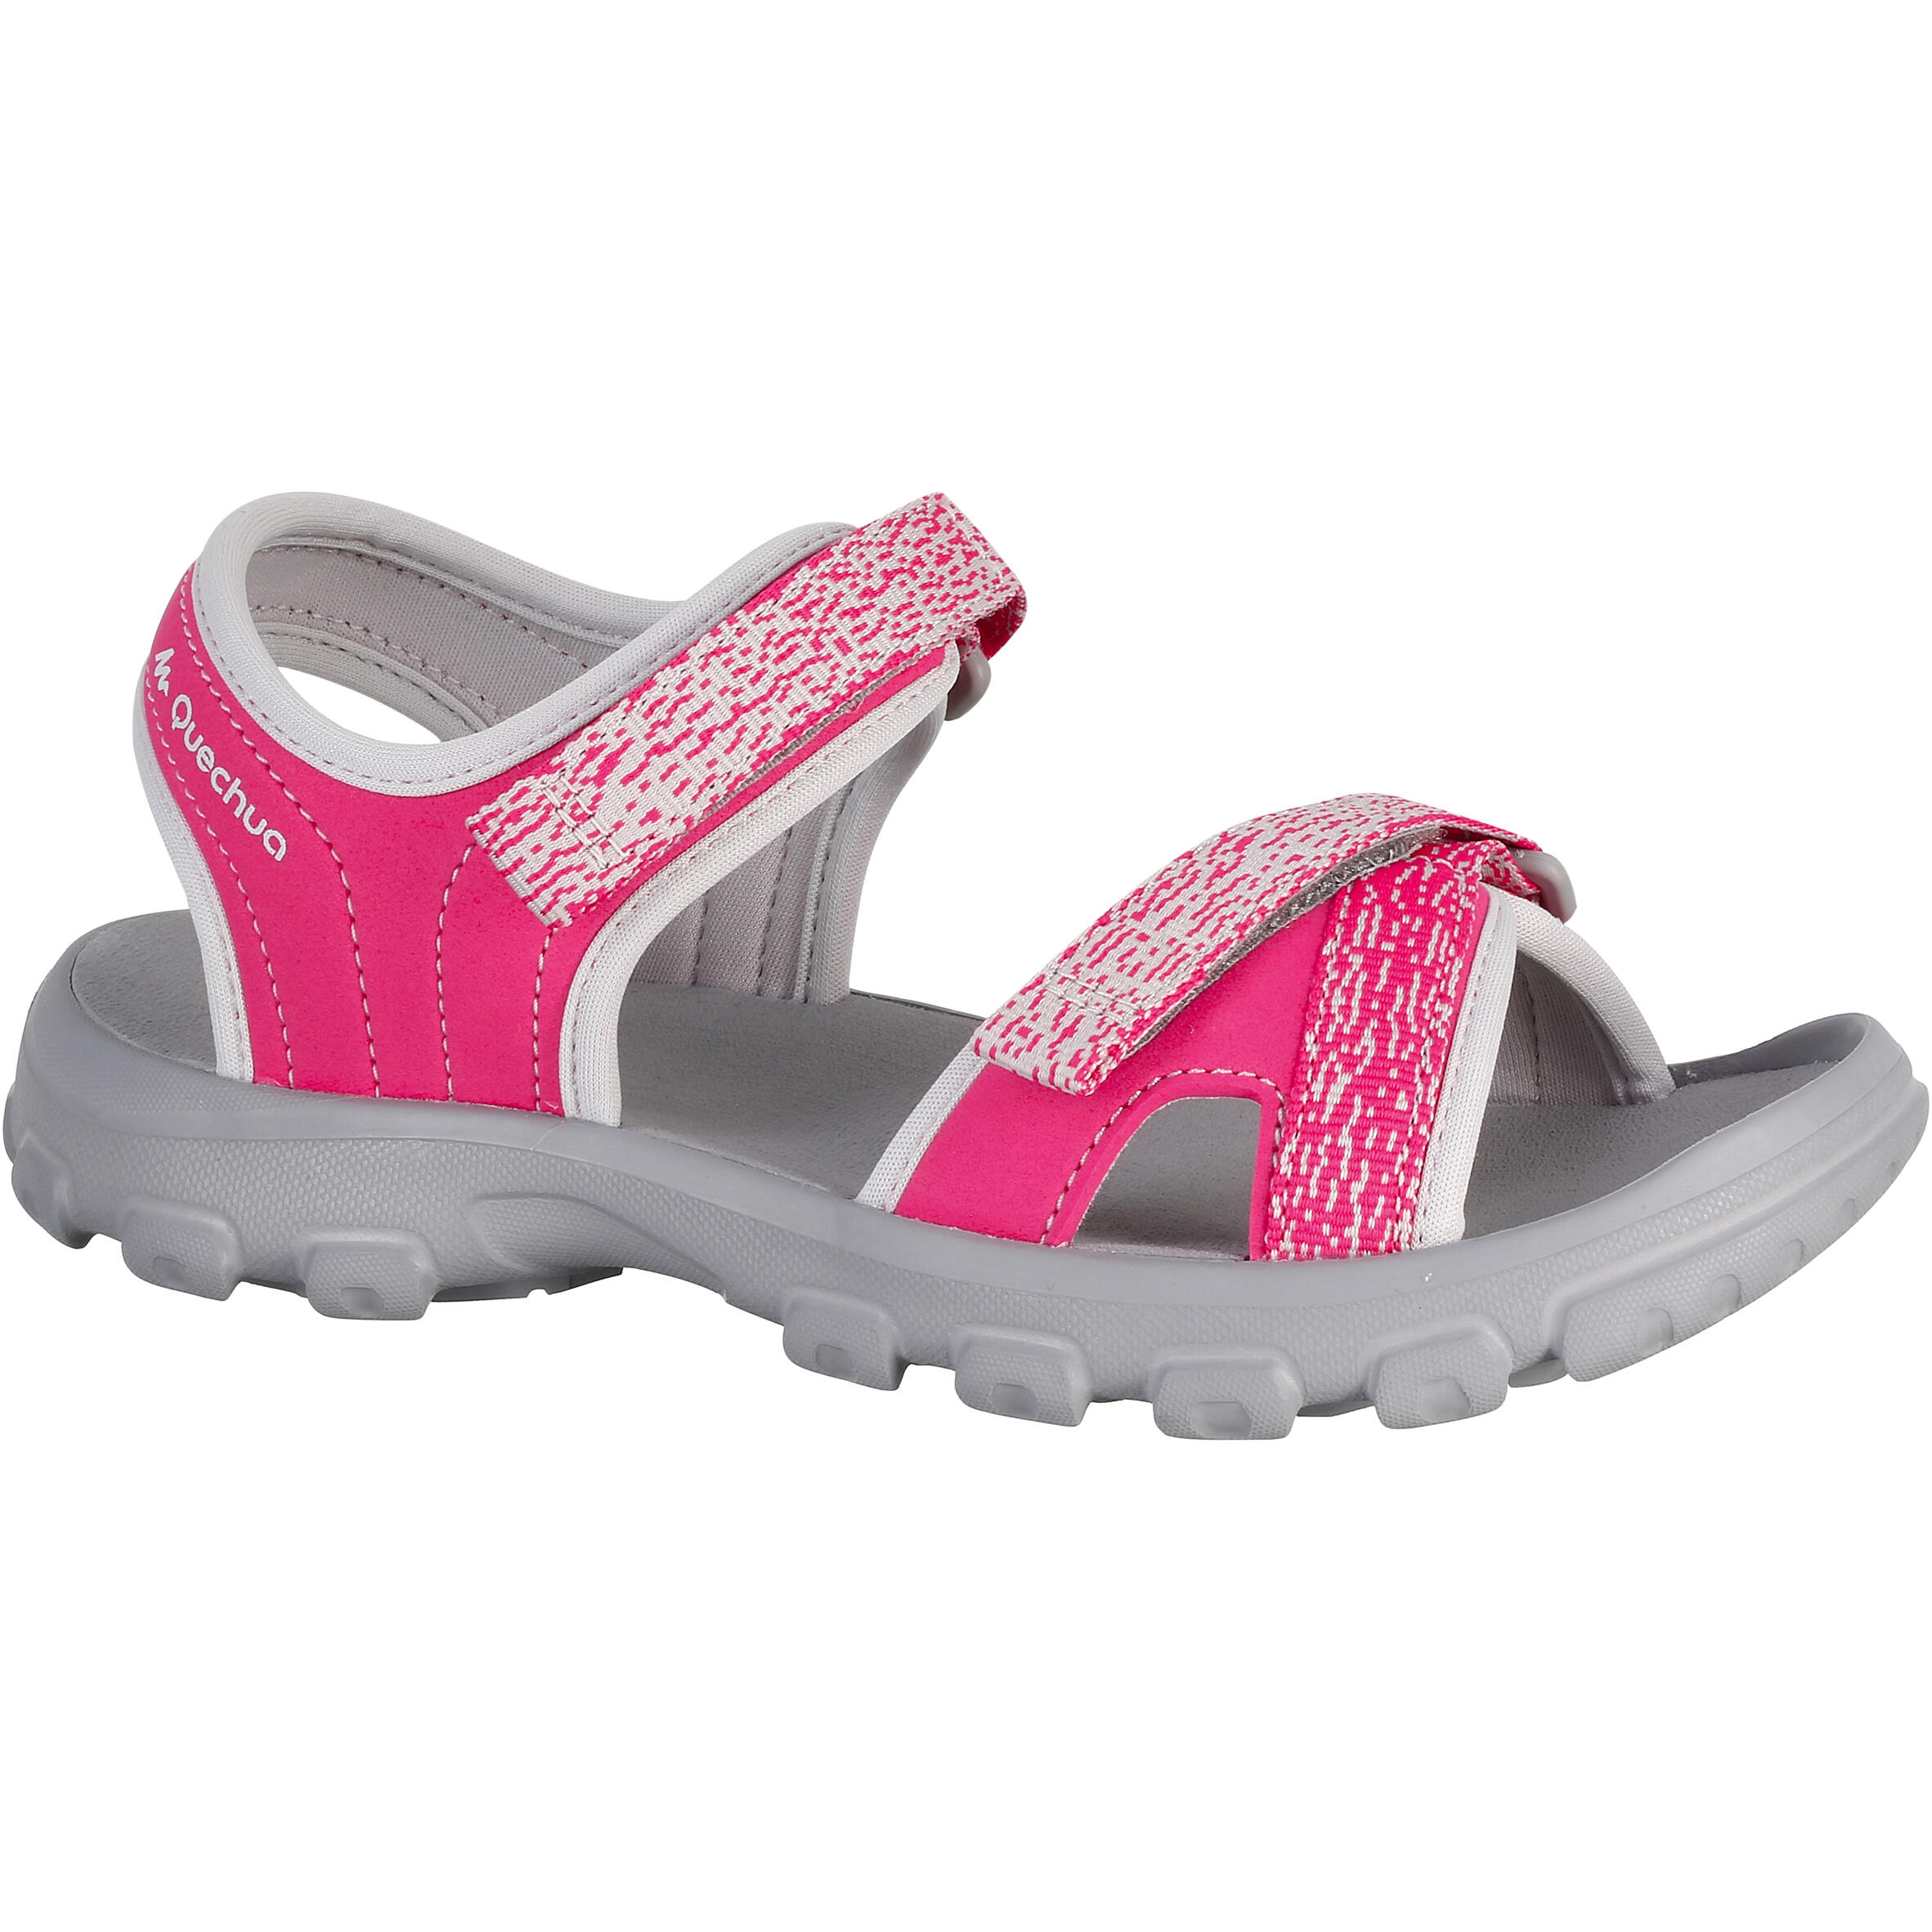 QUECHUA MH100 Children’s Hiking Sandals - Pink